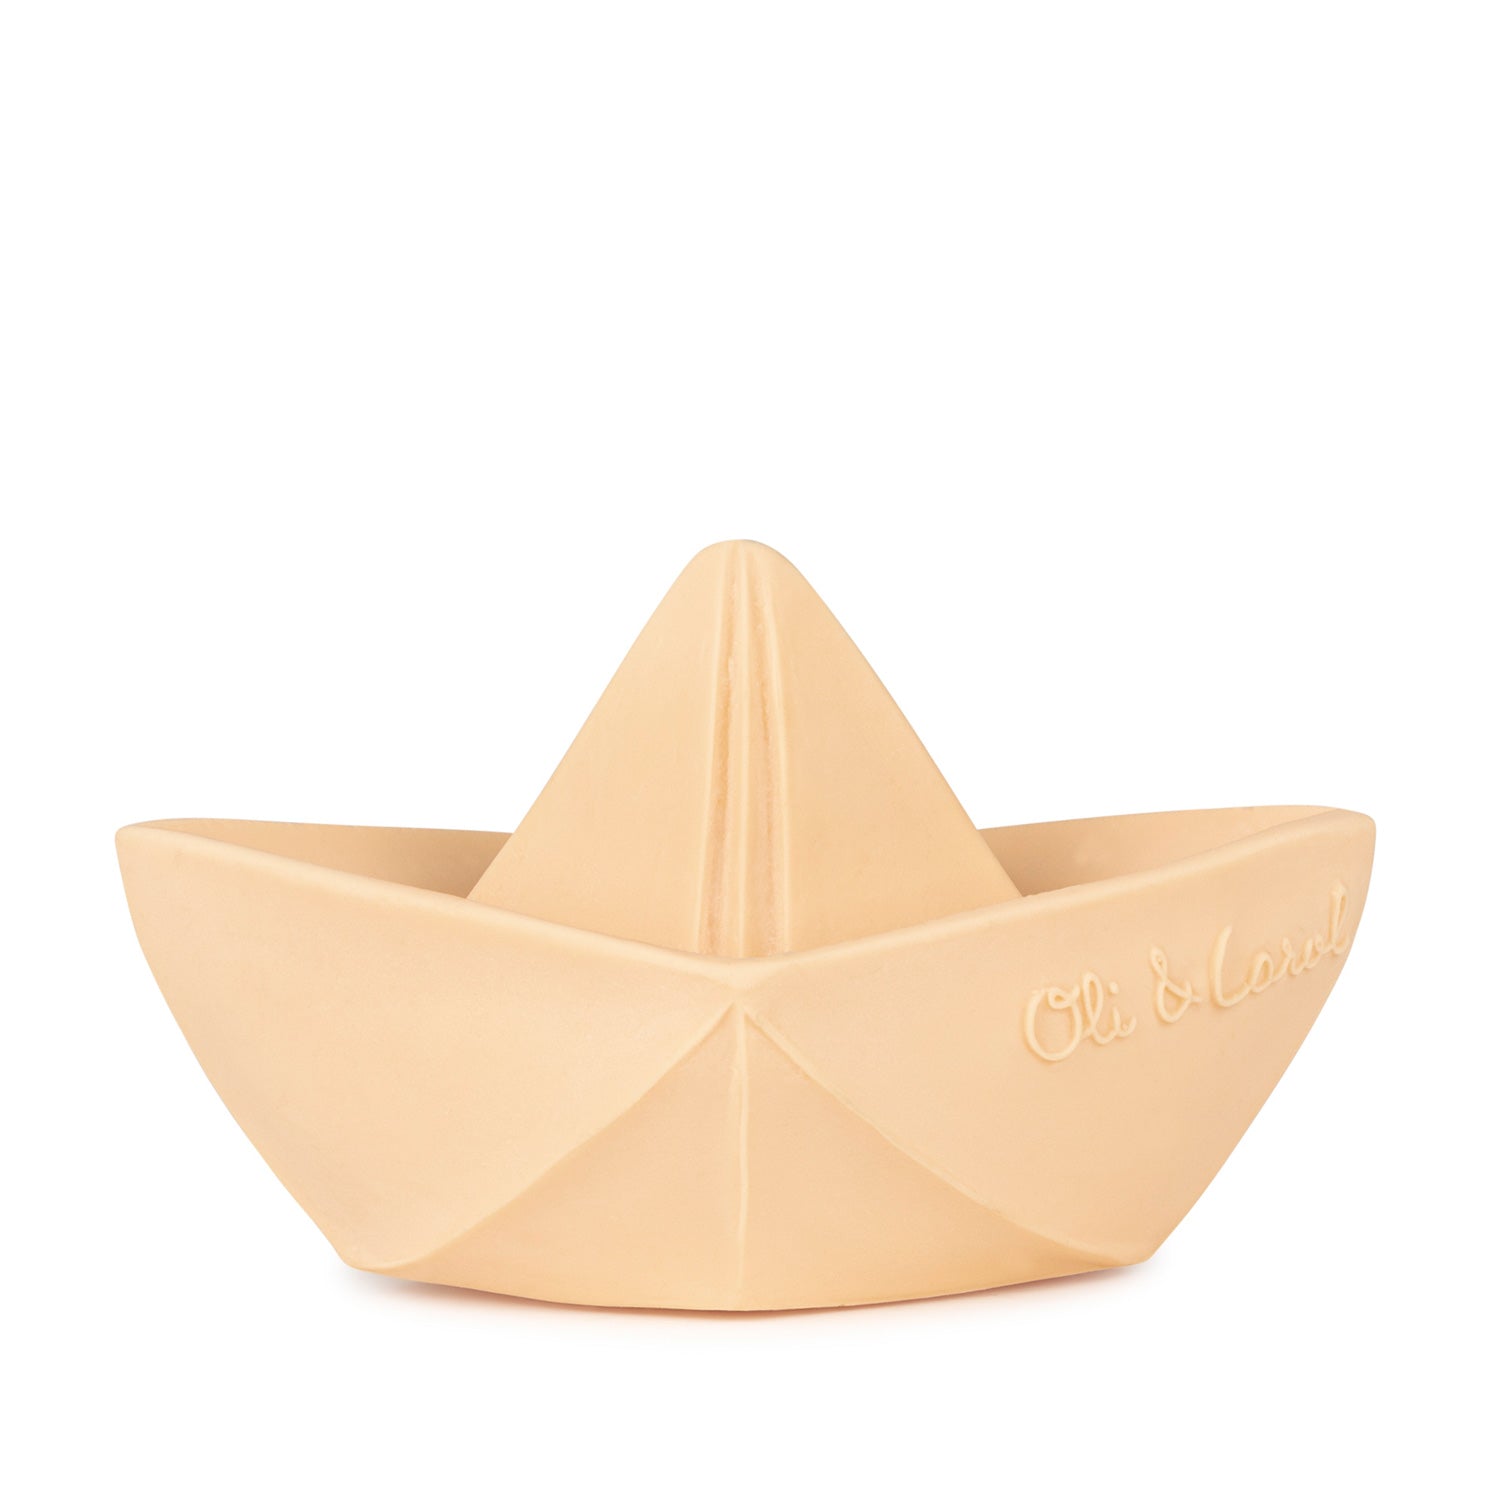 Origami Boat Nude Bath Toy - Oli&Carol